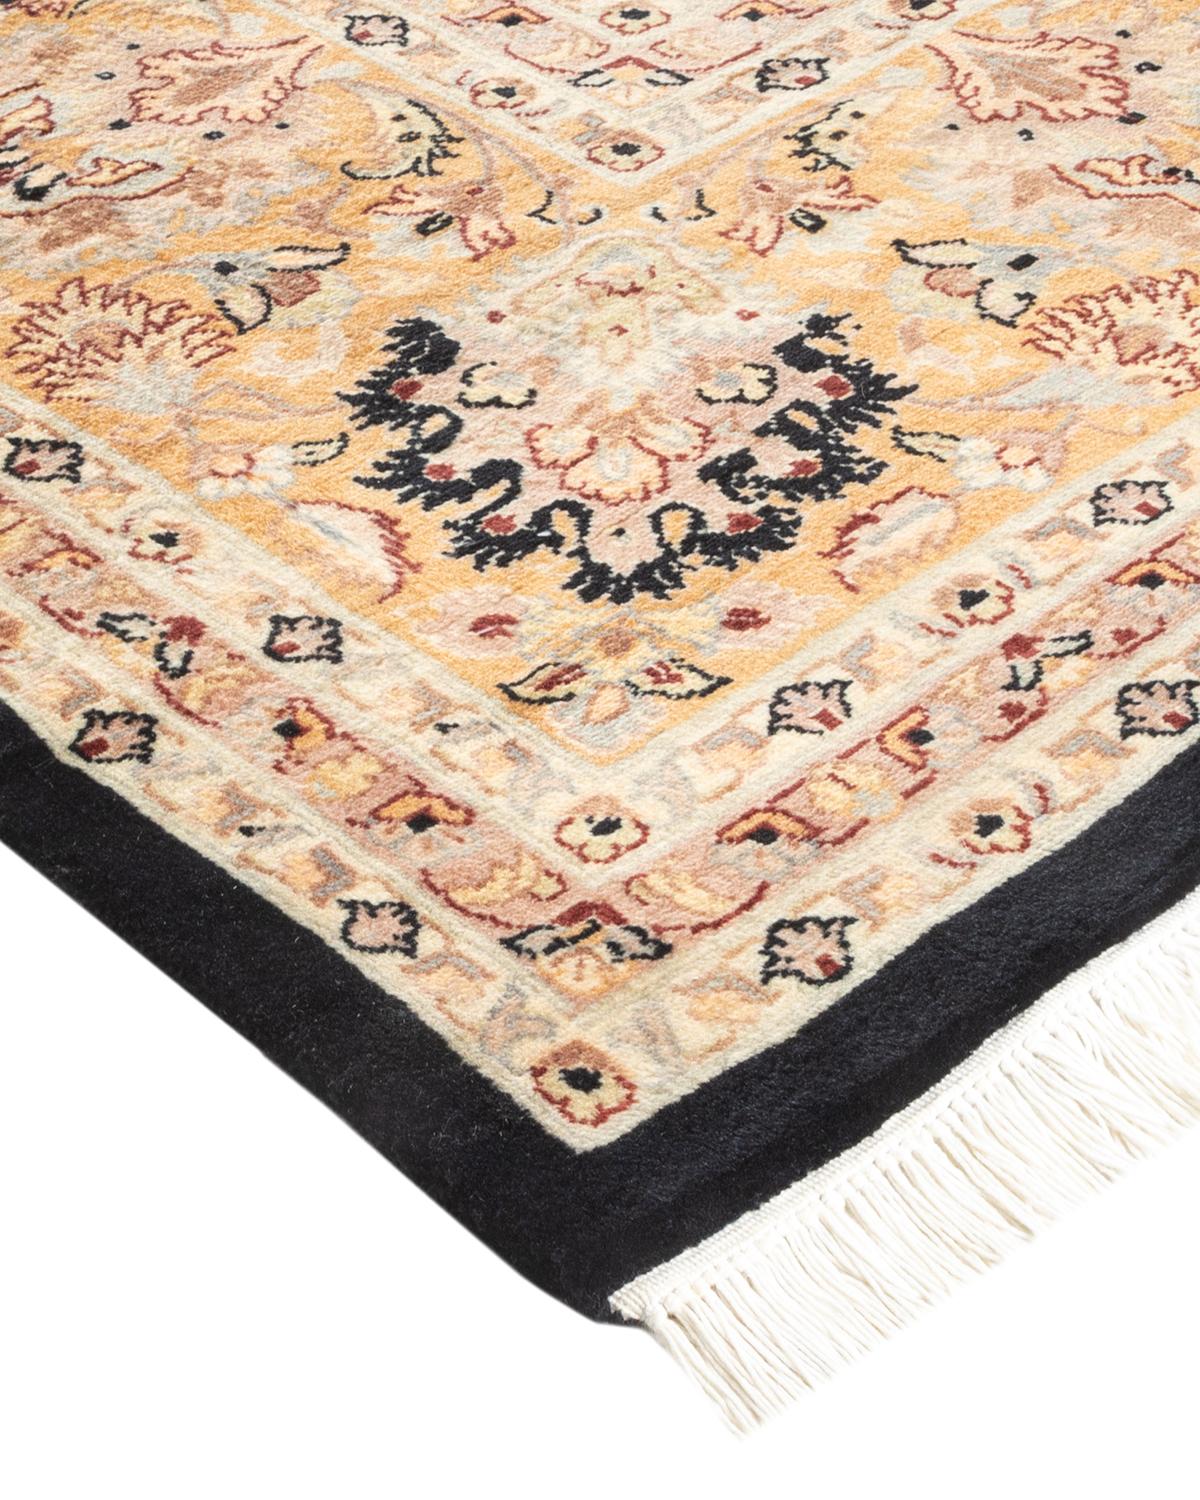 Die Teppiche der Mogul-Kollektion bringen mit ihren dezenten Farben und Allover-Mustern zeitlose Eleganz in jeden Raum. Beeinflusst von einem Spektrum türkischer, indischer und persischer Designs, lassen die Kunsthandwerker, die diese Wollteppiche